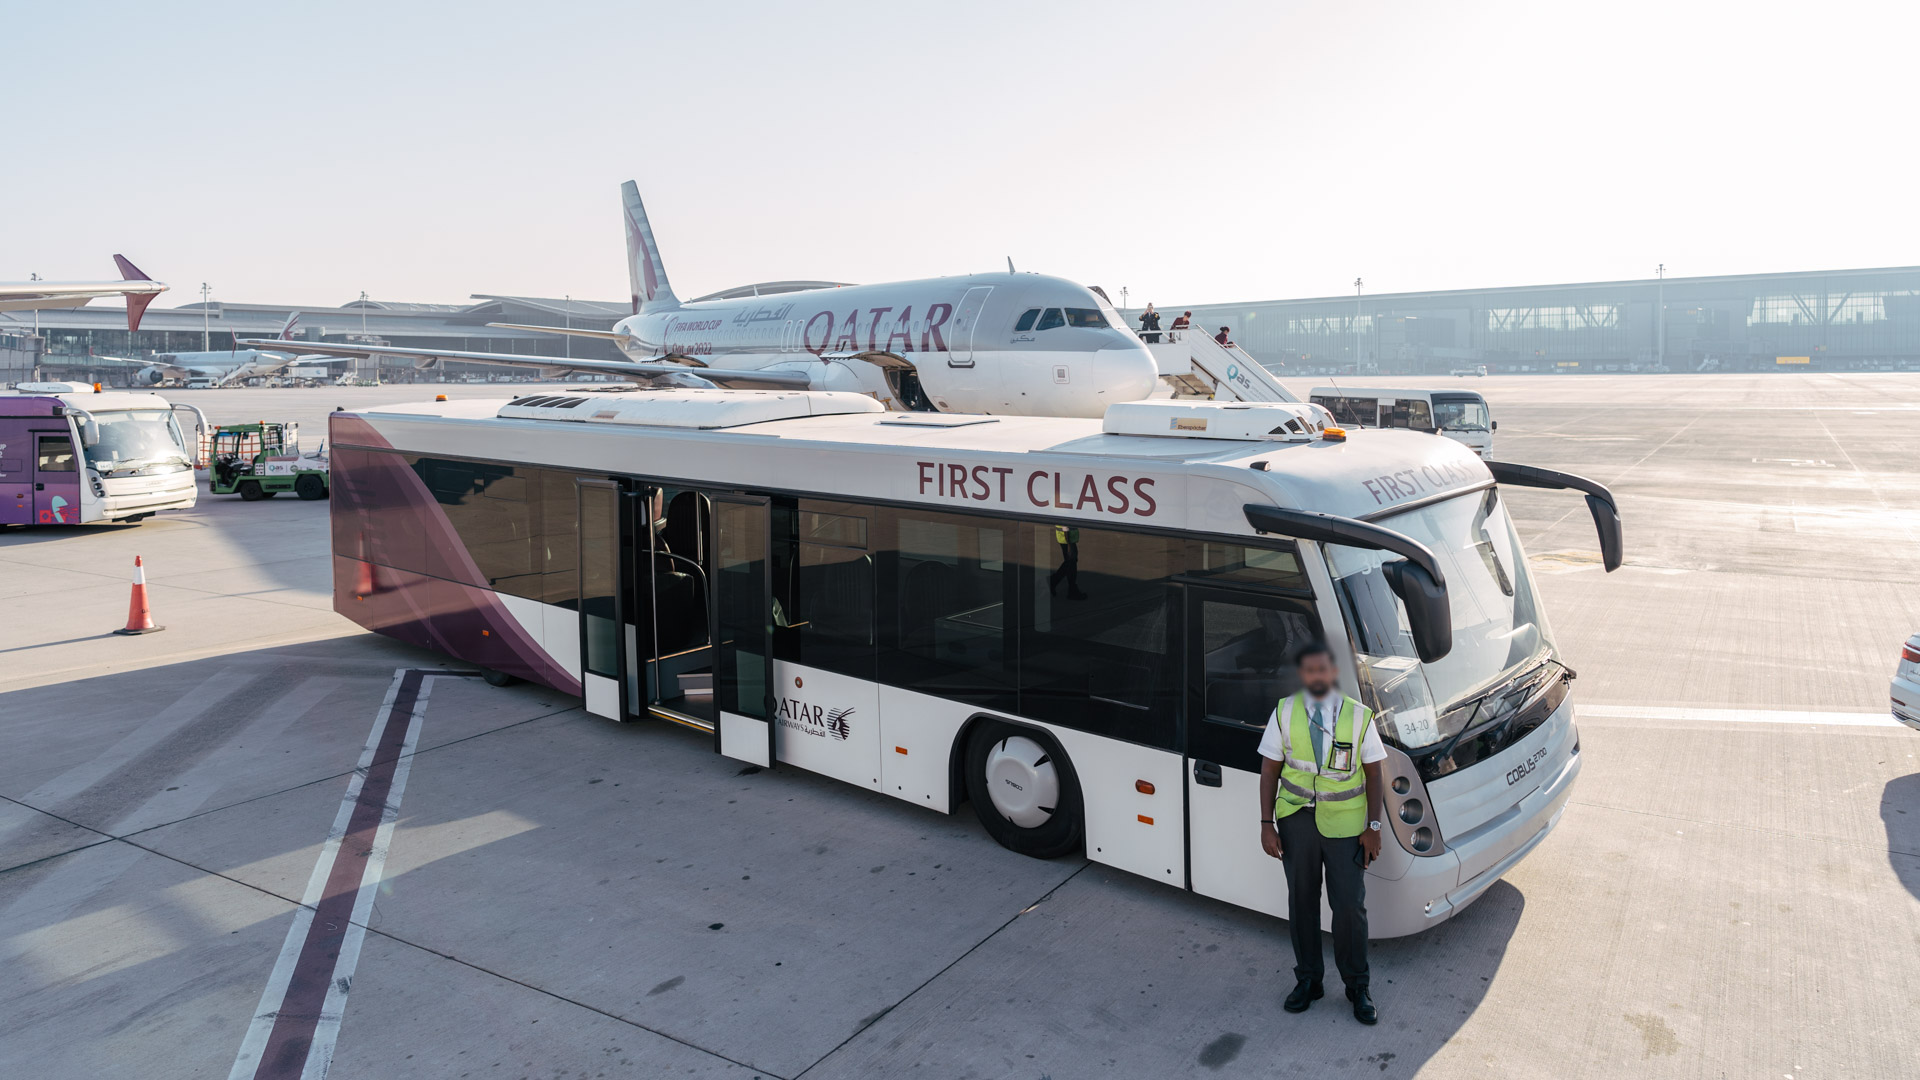 Qatar Airways A320 First Class remote gate bus